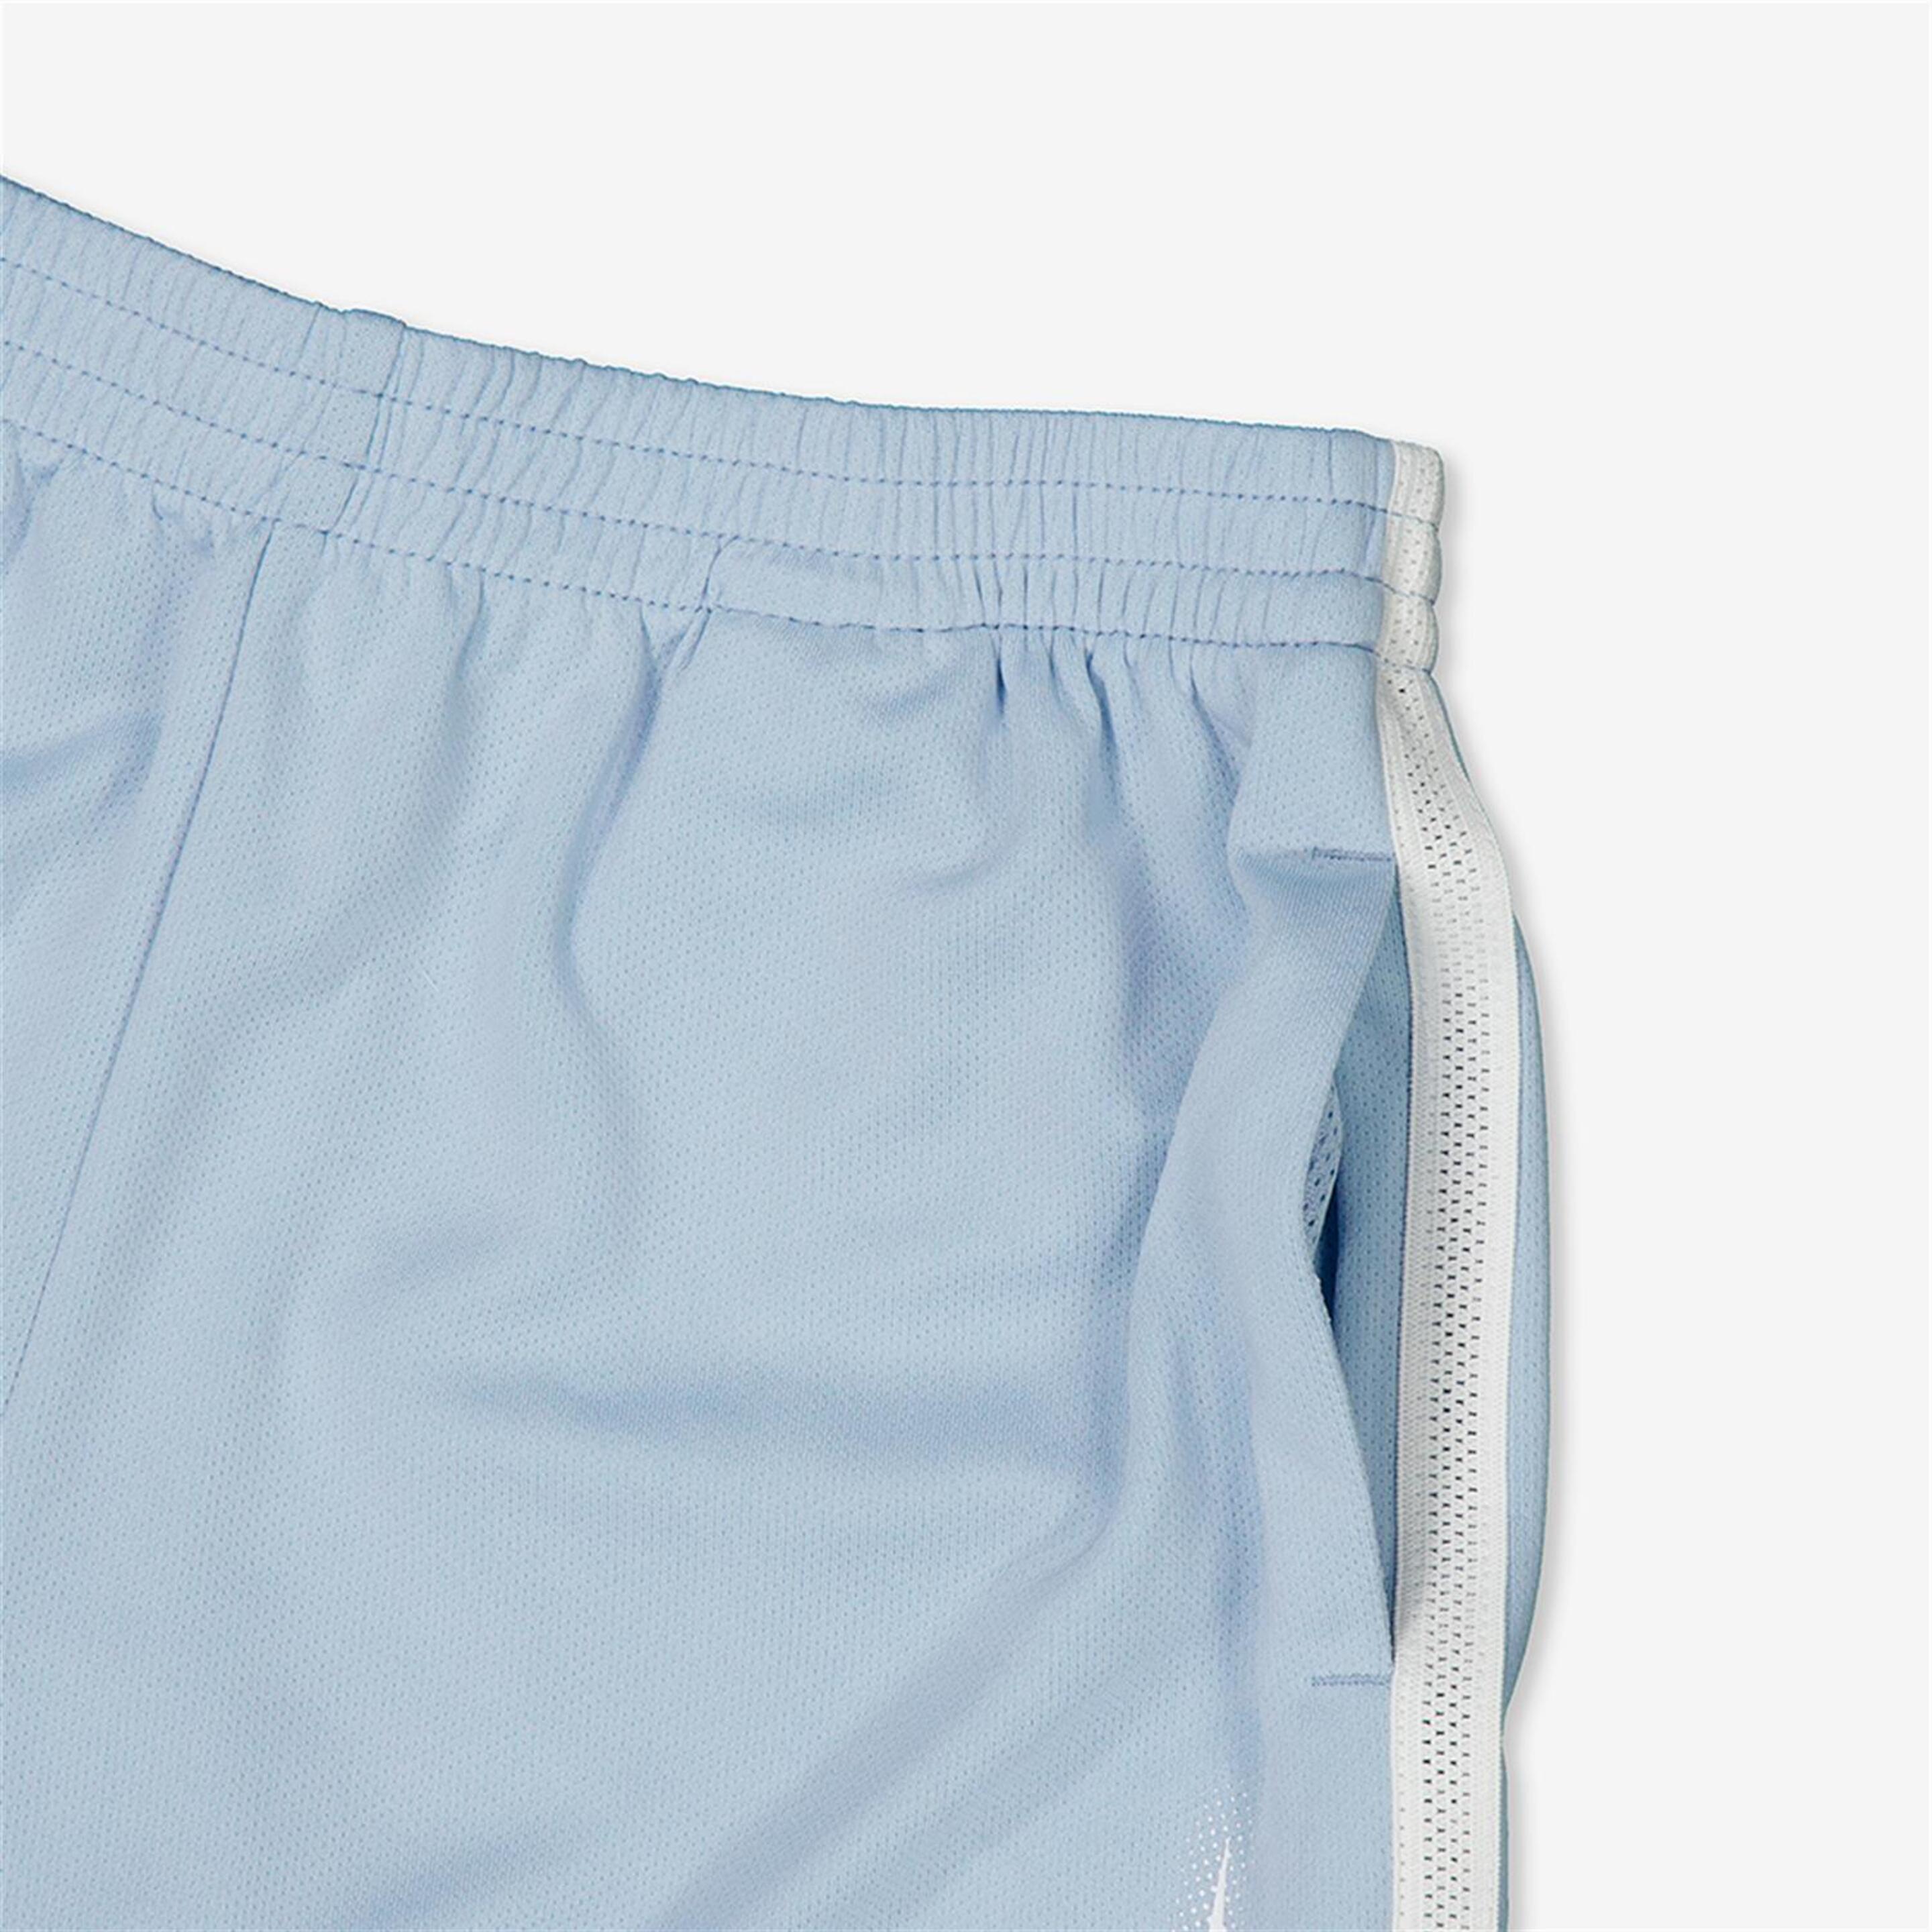 Pantalón Nike - Azul - Pantalón Corto Niño